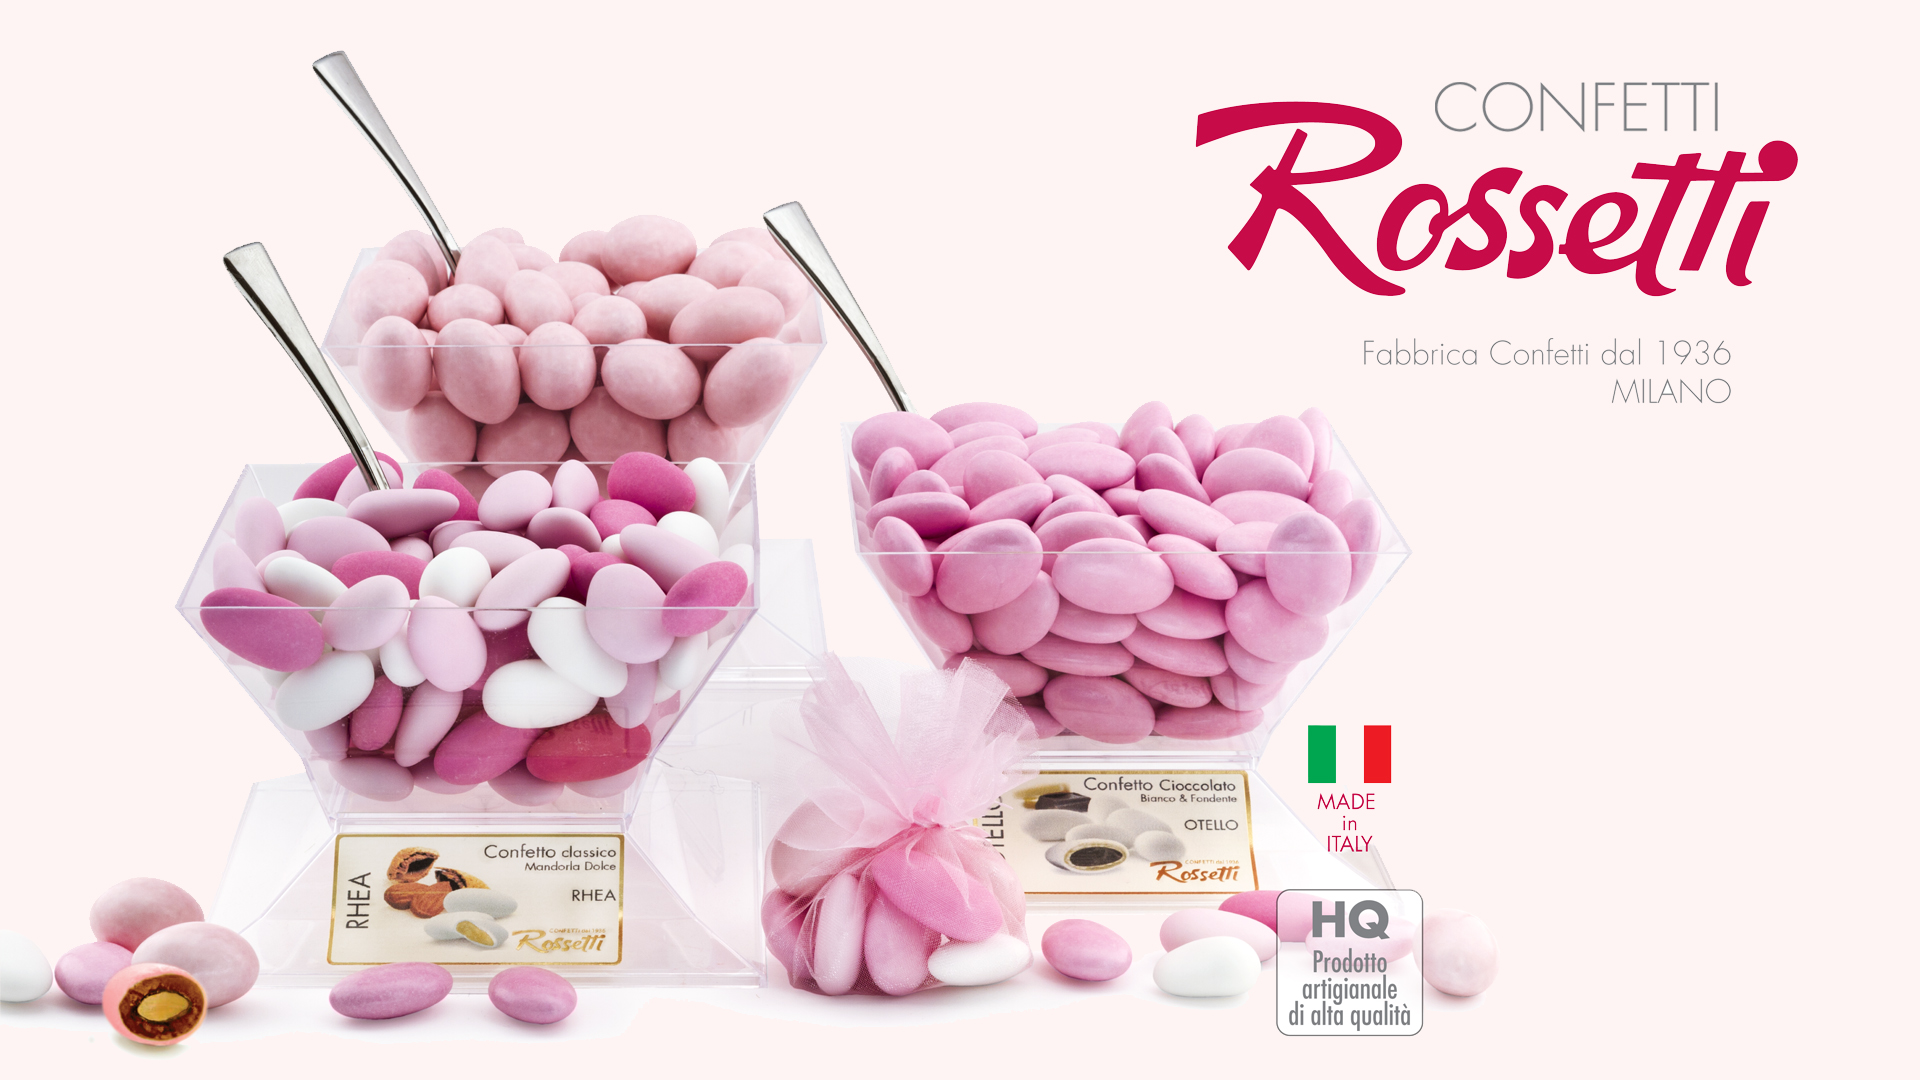 confetti-rossetti-bomboniere-milano-milanomia-com_www.italyengine.it (14)